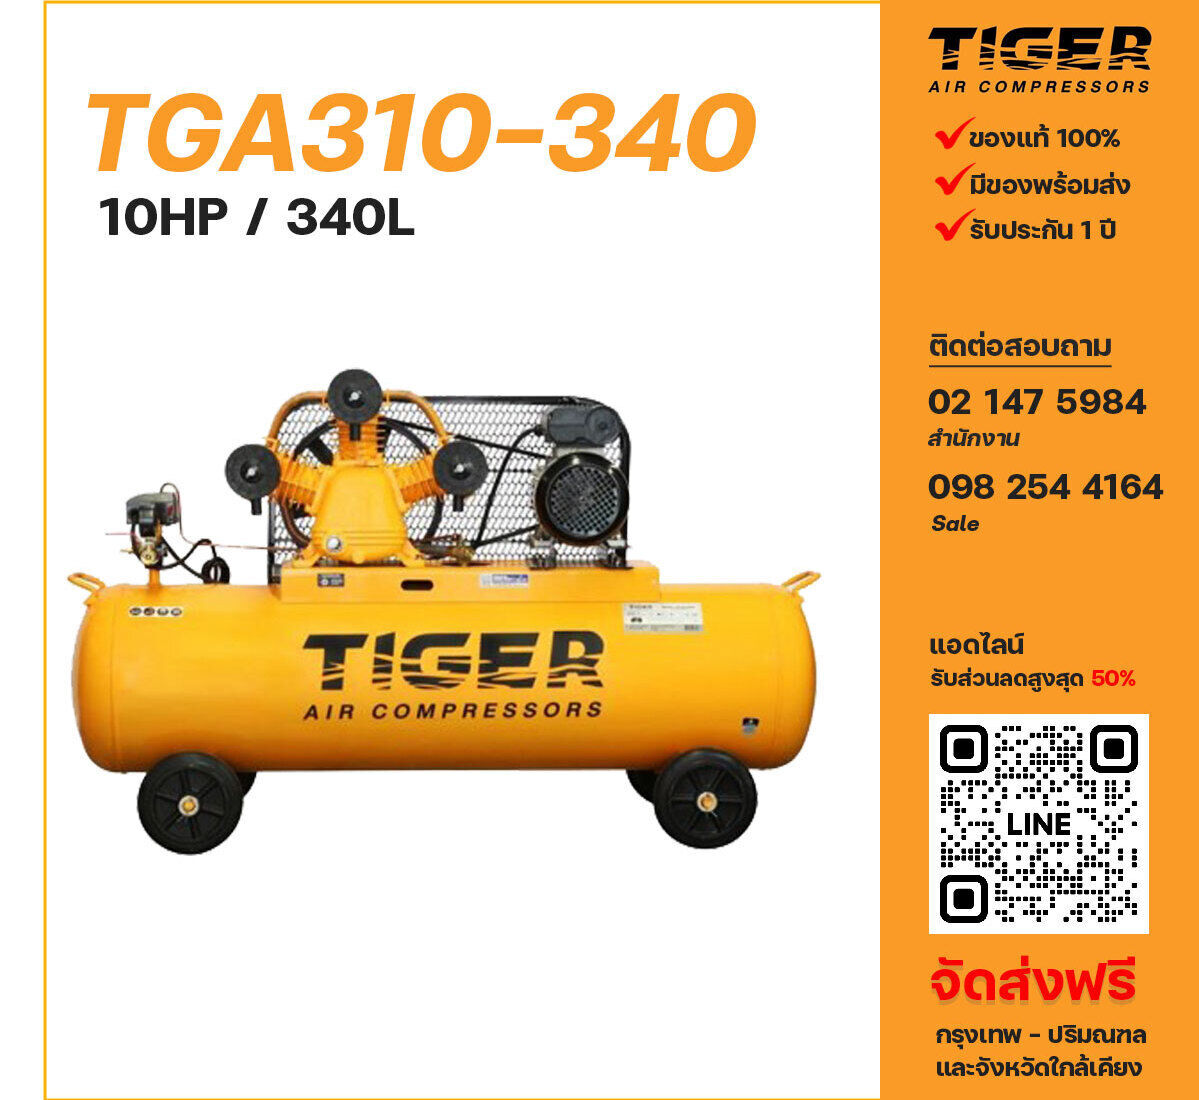 ปั๊มลมไทเกอร์ TIGER TGA310-340 380V ปั๊มลมลูกสูบ ขนาด 3 สูบ 10 แรงม้า 340 ลิตร TIGER พร้อมมอเตอร์ ไฟ 380V ส่งฟรี กรุงเทพฯ-ปริมณฑล รับประกัน 1 ปี